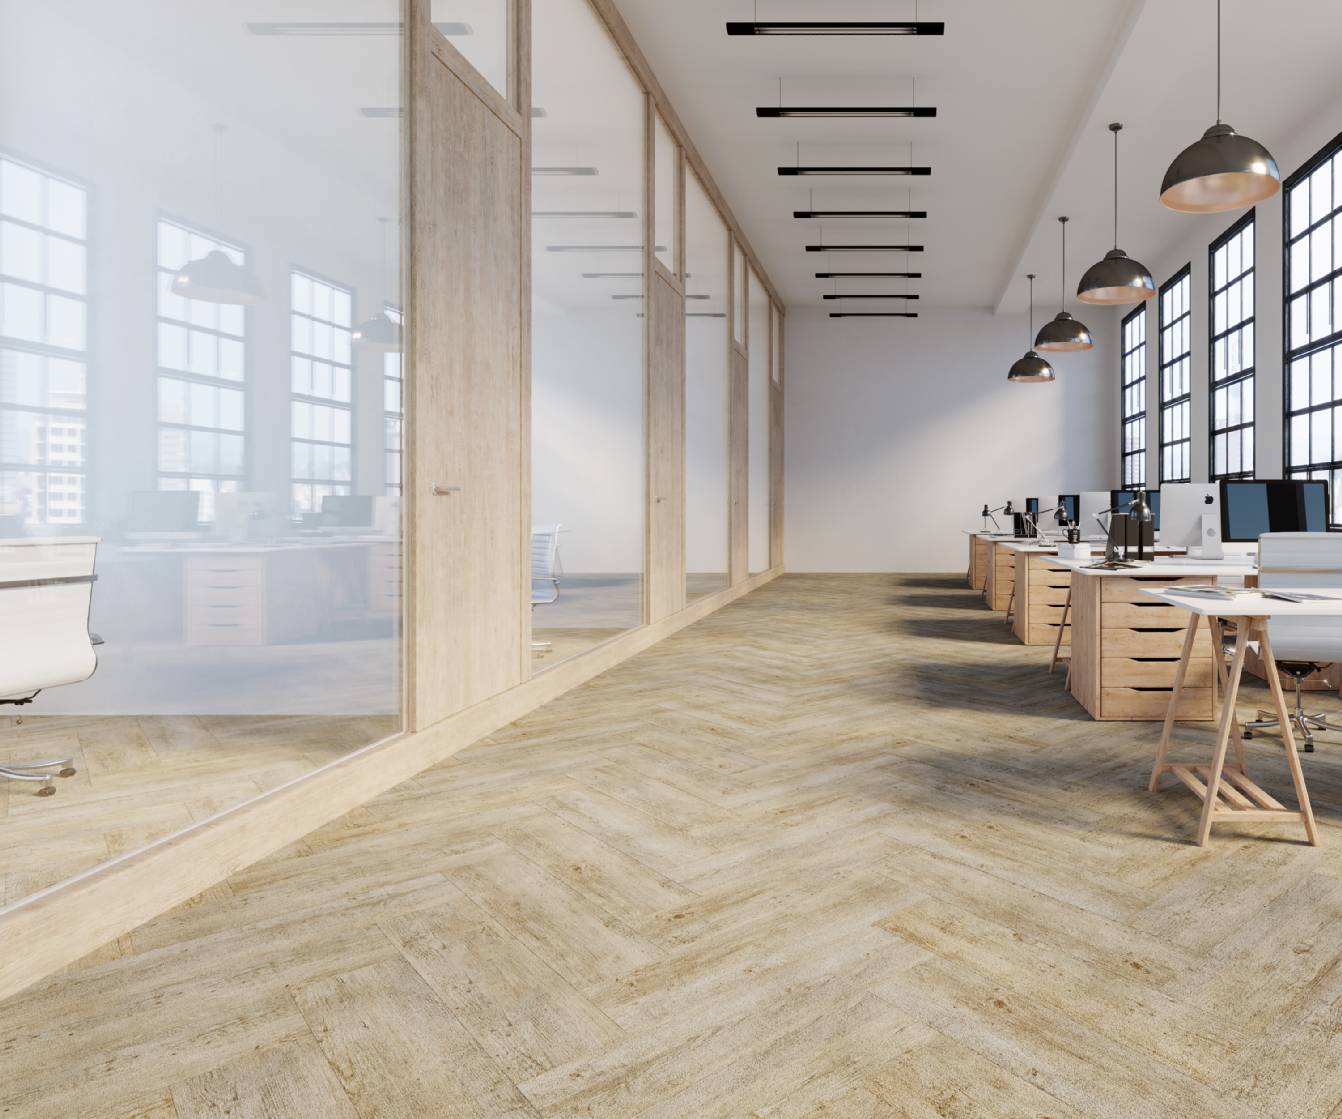 Suchen Sie einen Teppichboden für Ihr Büro? Dann sind Sie bei uns, der Carpet Company aus Hamburg, Umkreis Sasel und Wandsbek, genau richtig